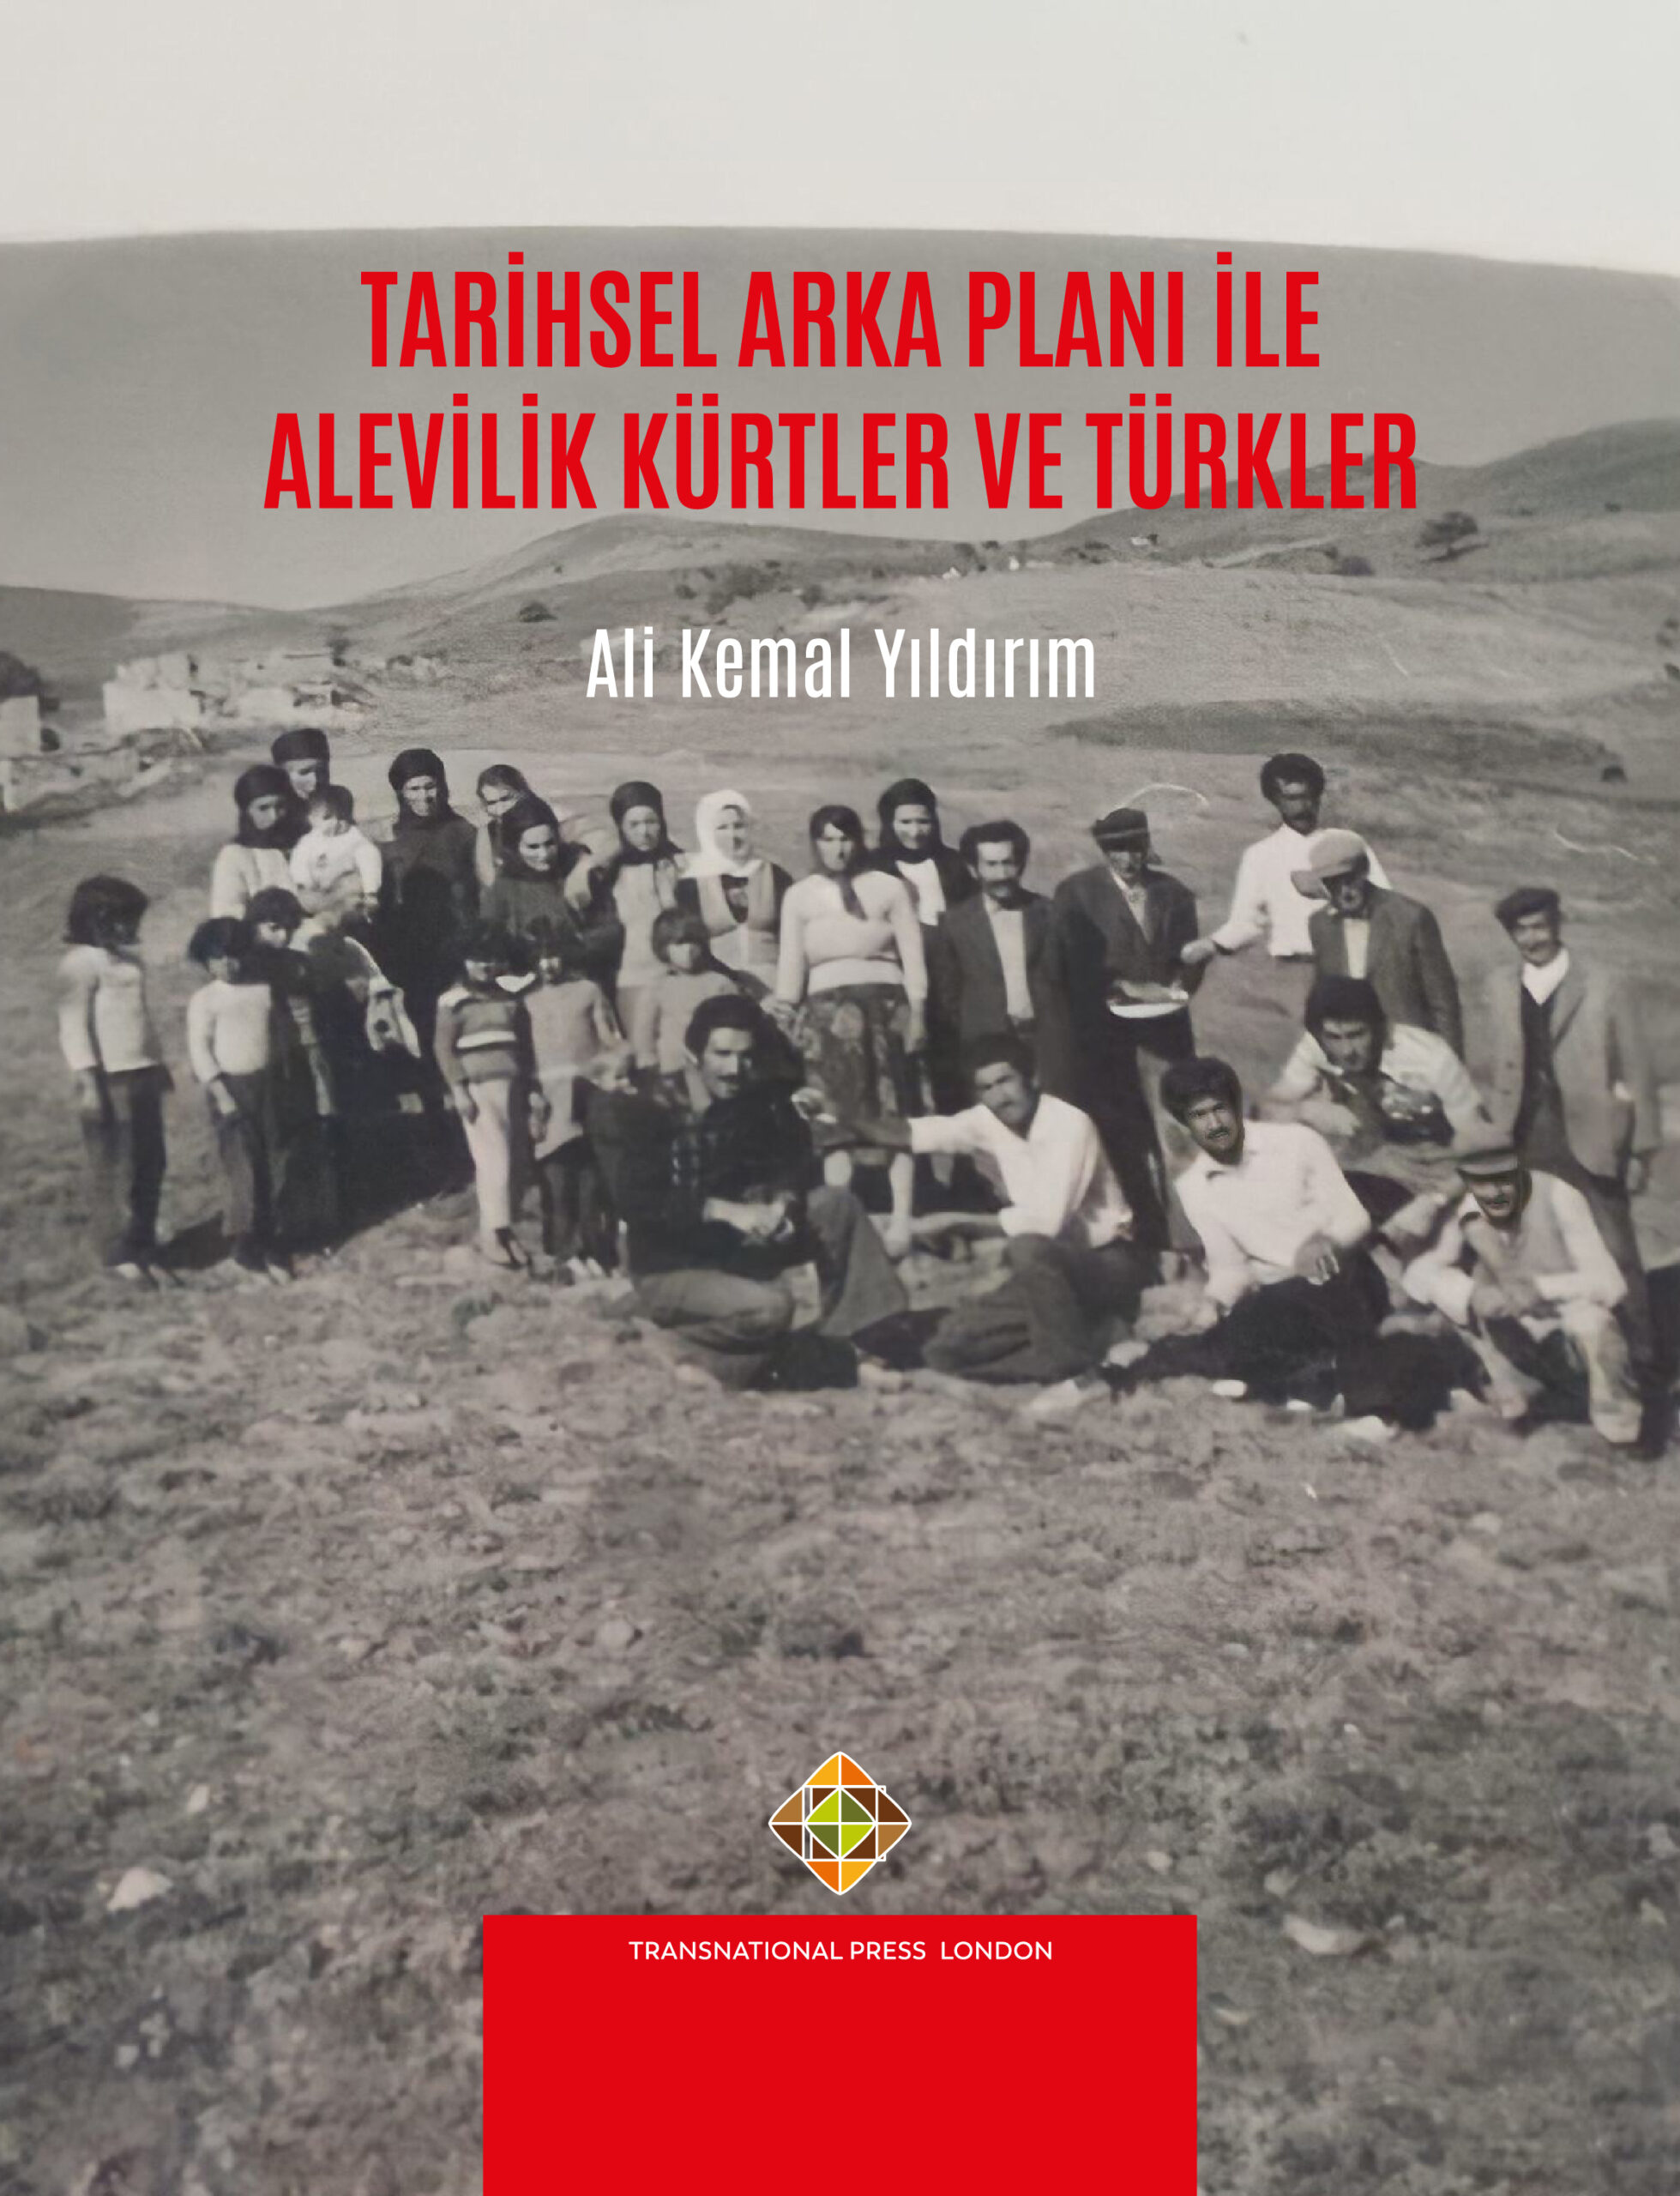 Tarihsel Arka Planı ile Alevilik Kürtler ve Türkler